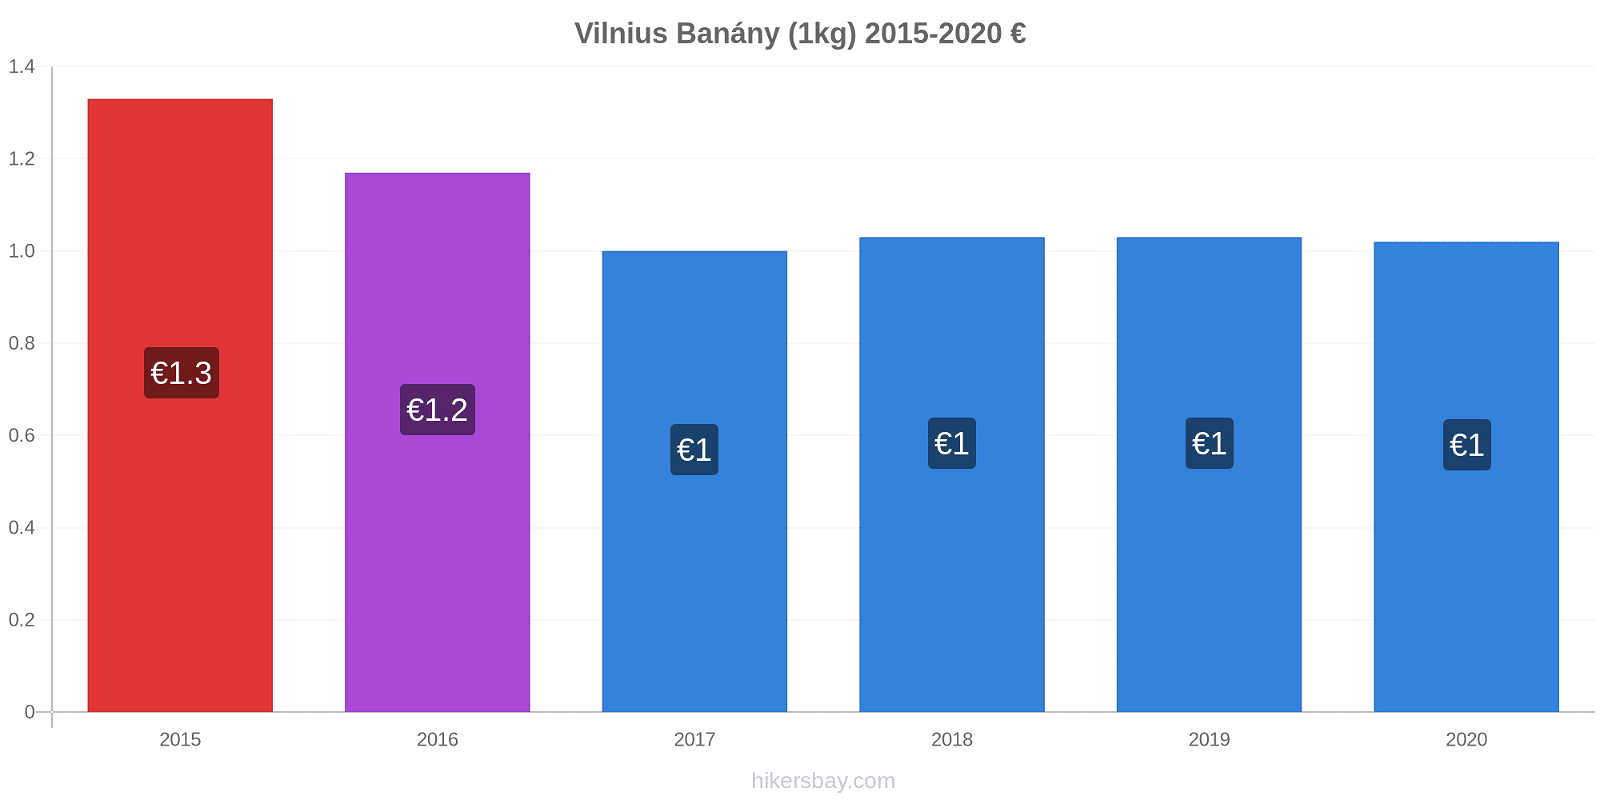 Vilnius změny cen Banány (1kg) hikersbay.com